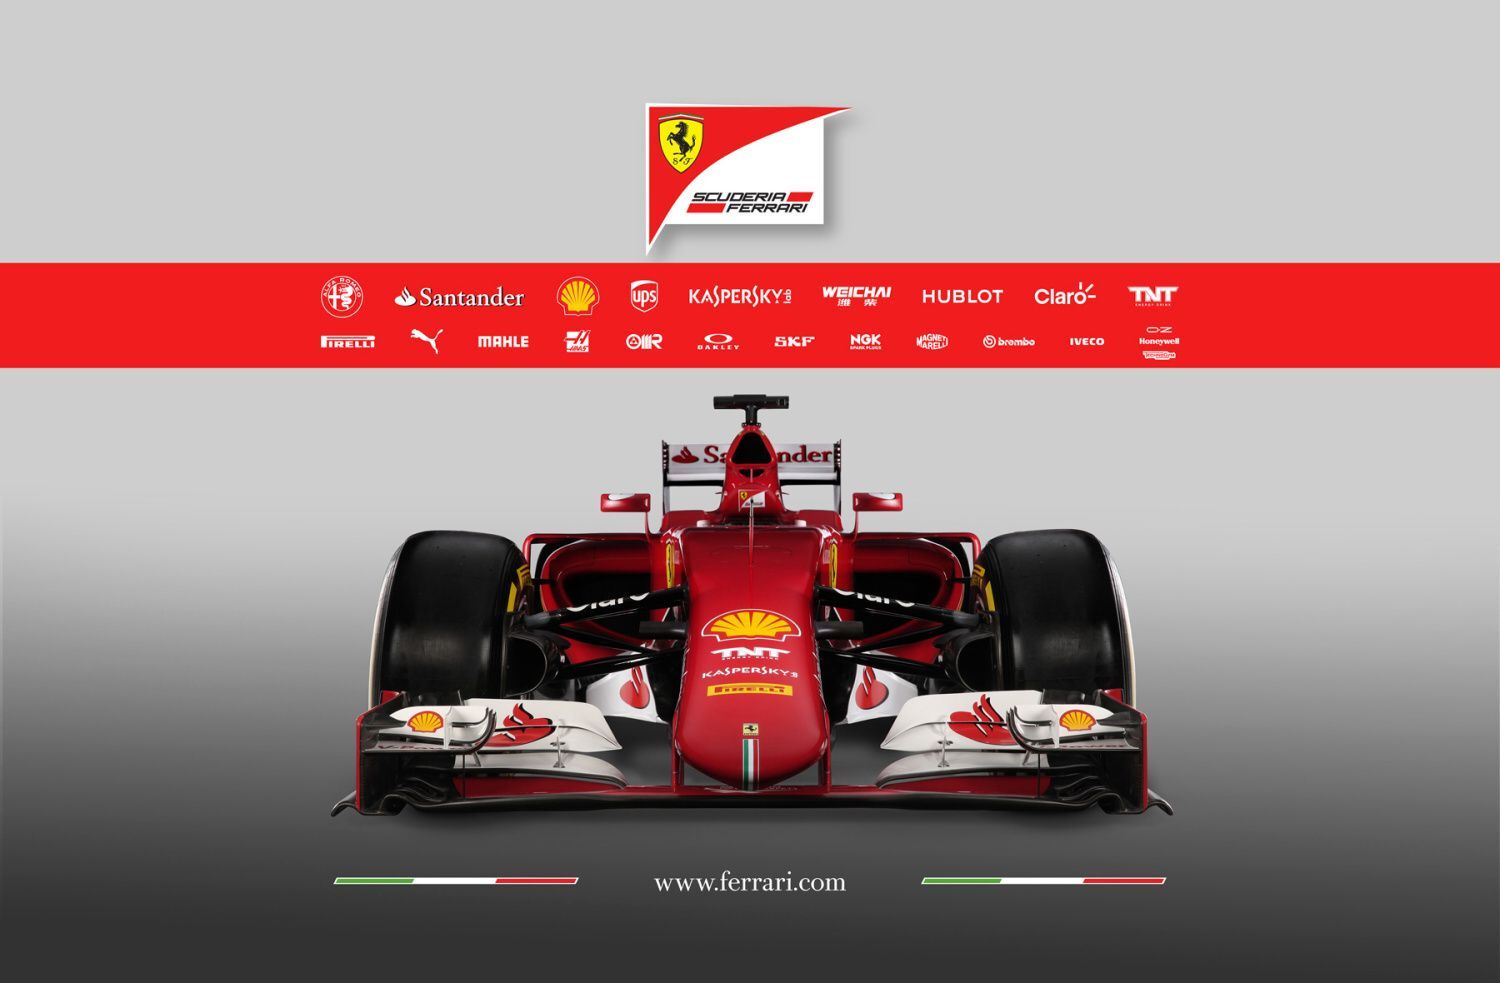 F1: Ferrari SF15-T (2015)